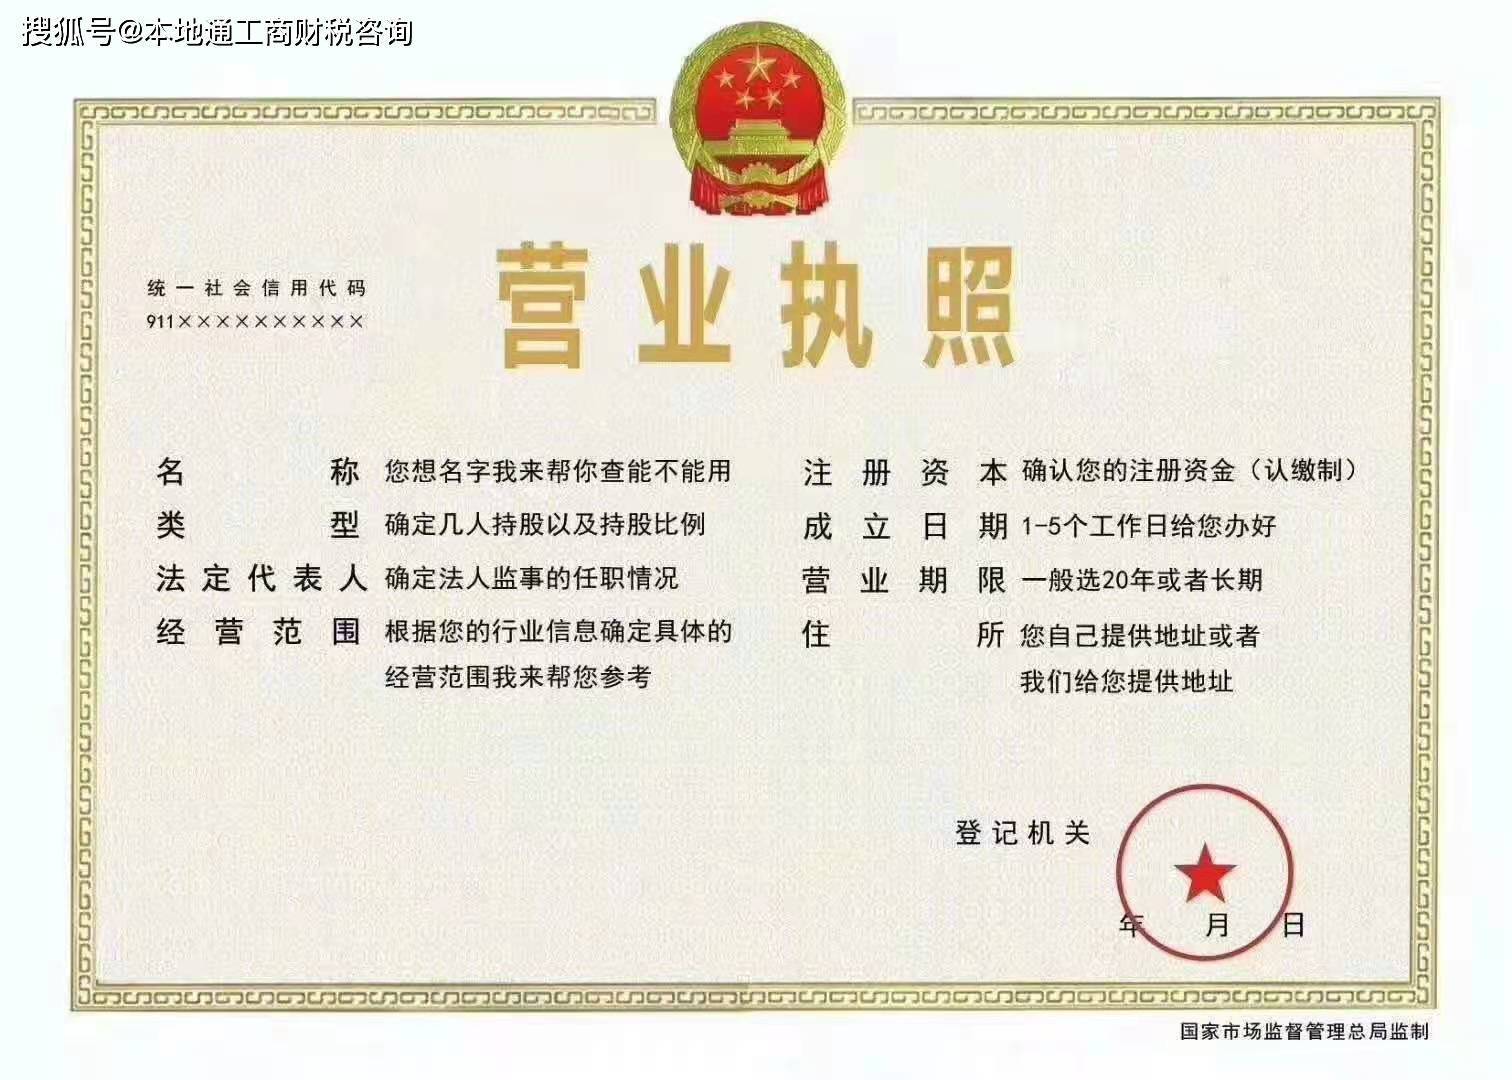 在杭州办理注册营业执照的时候经营范围该怎么写?